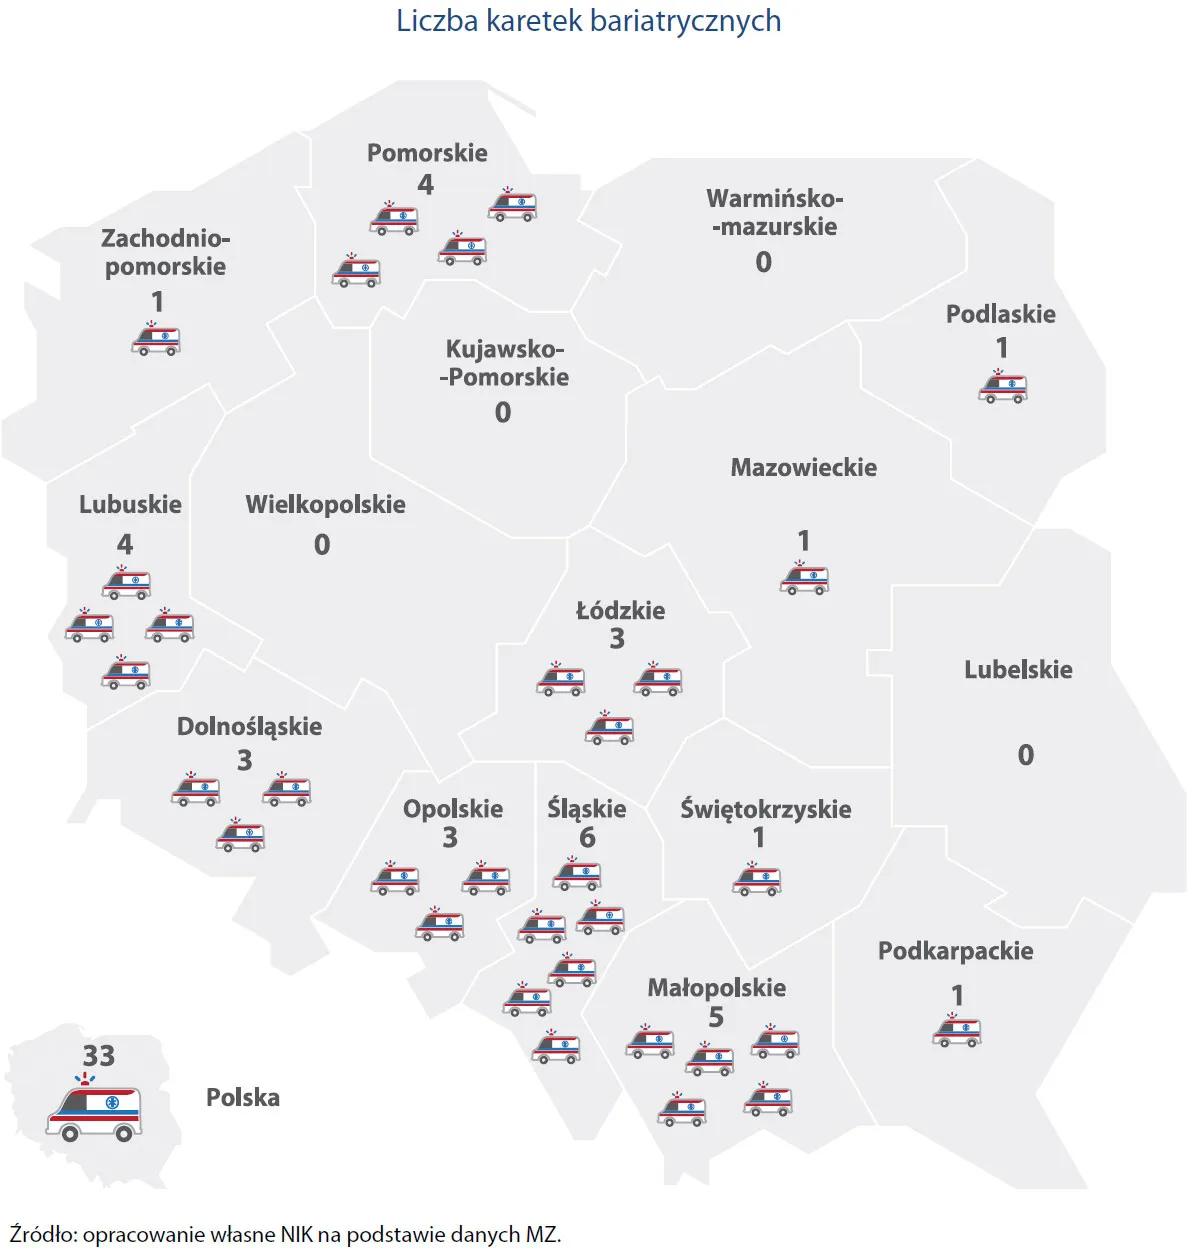 Karetki bariatryczne w Polsce